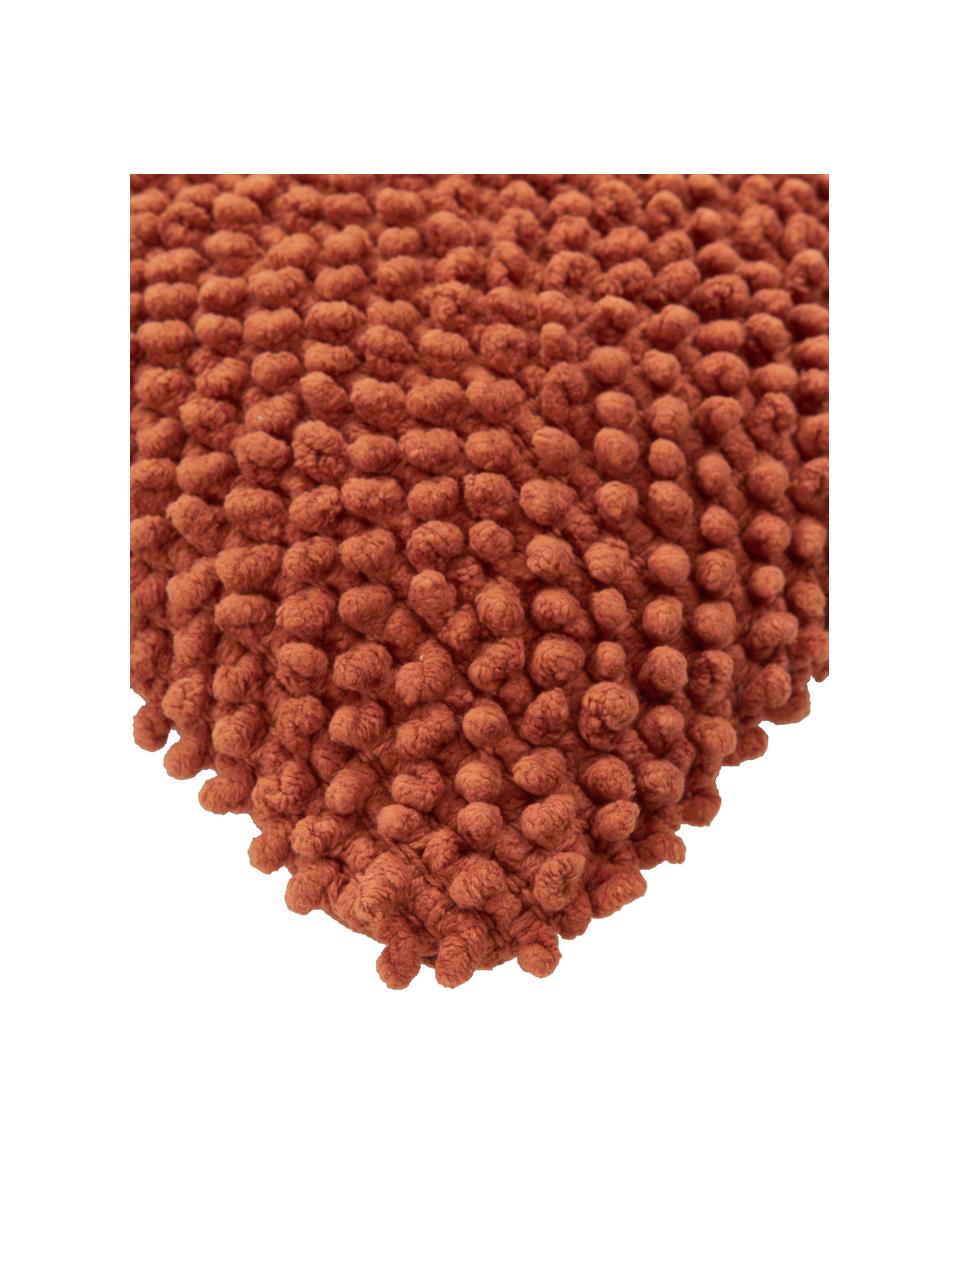 Housse de coussin rectangulaire rouge rouille Indi, 100 % coton, Rouille, larg. 30 x long. 50 cm